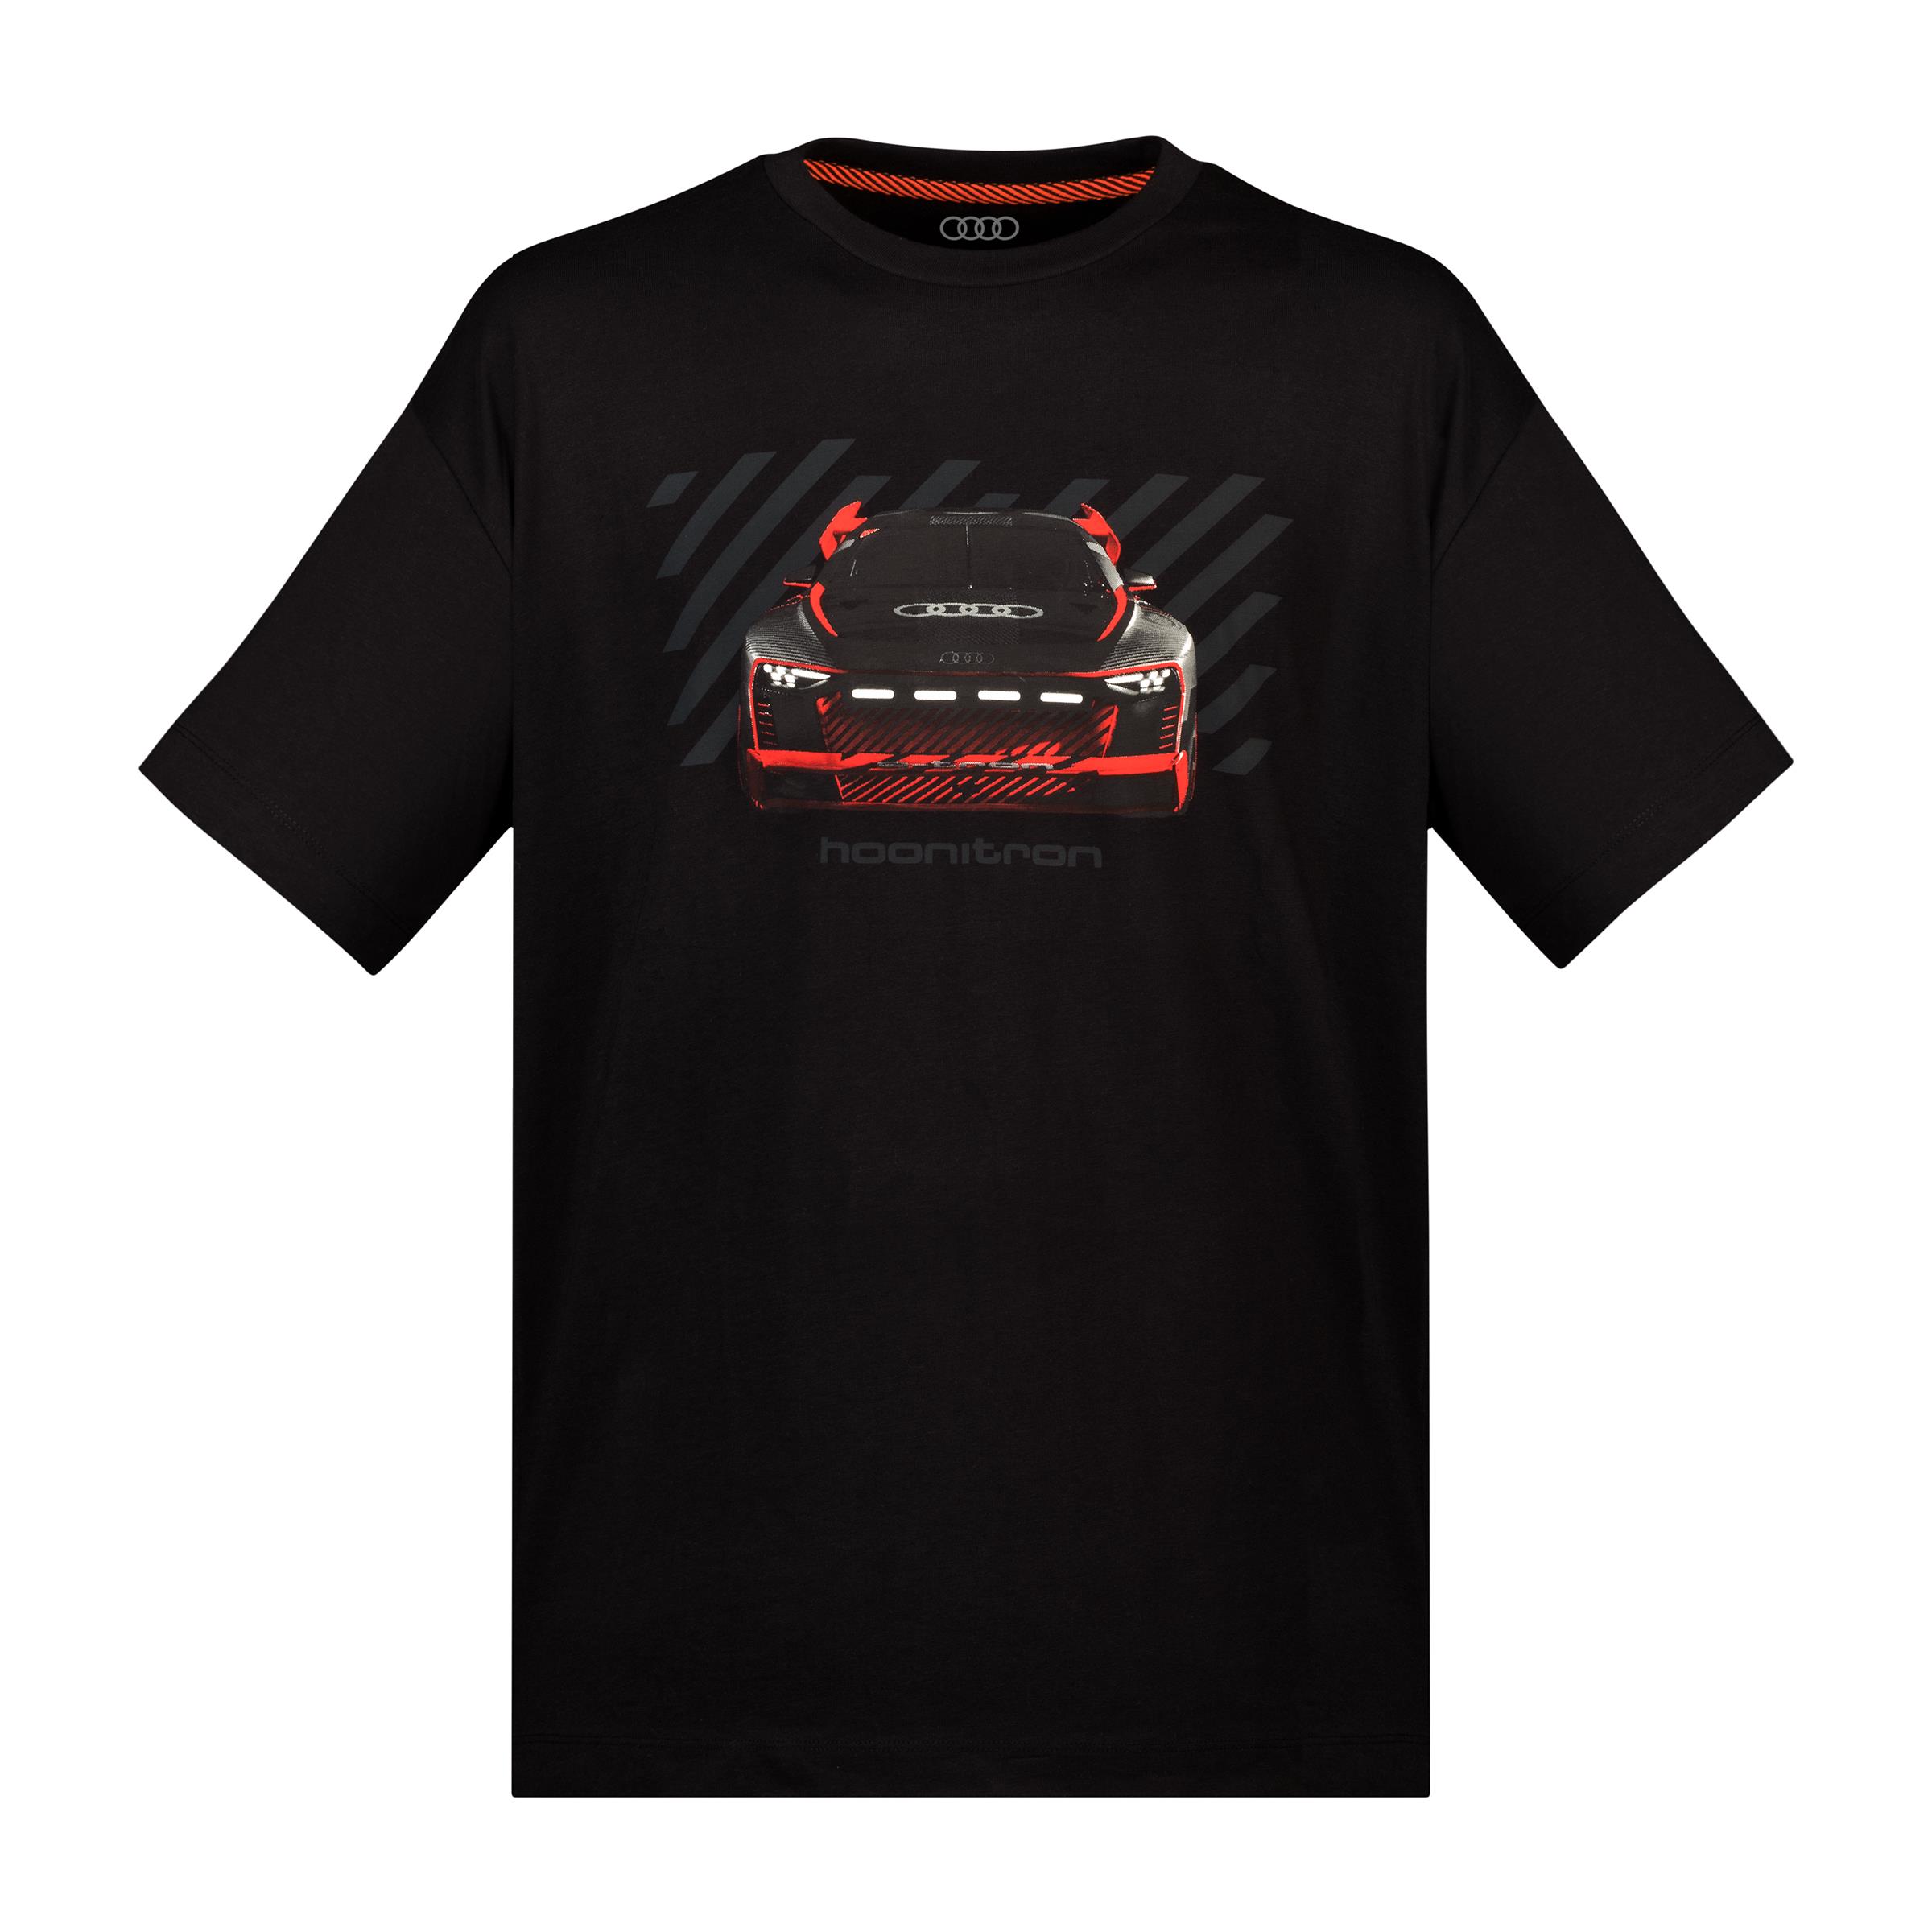 Audi Sport T-Shirt hoonitron Unisex schwarz Größe XL 3132200705